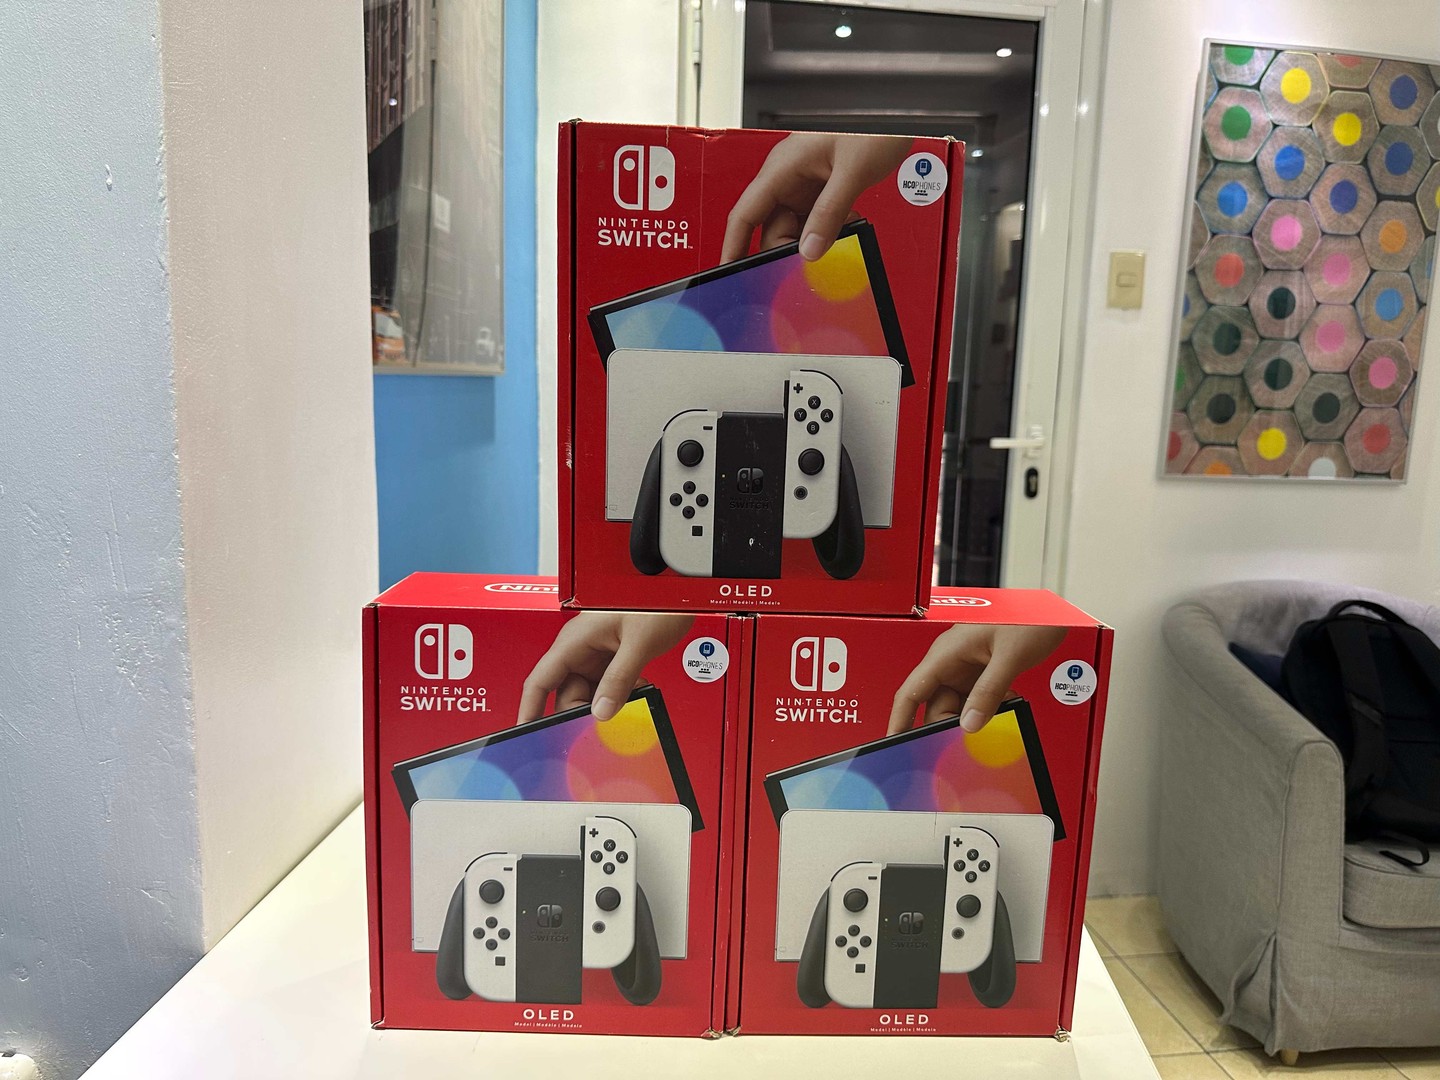 consolas y videojuegos - Nintendo Switch Oled Nuevos Sellados, Originales RD$ 19,200 NEG/ TIENDA 1